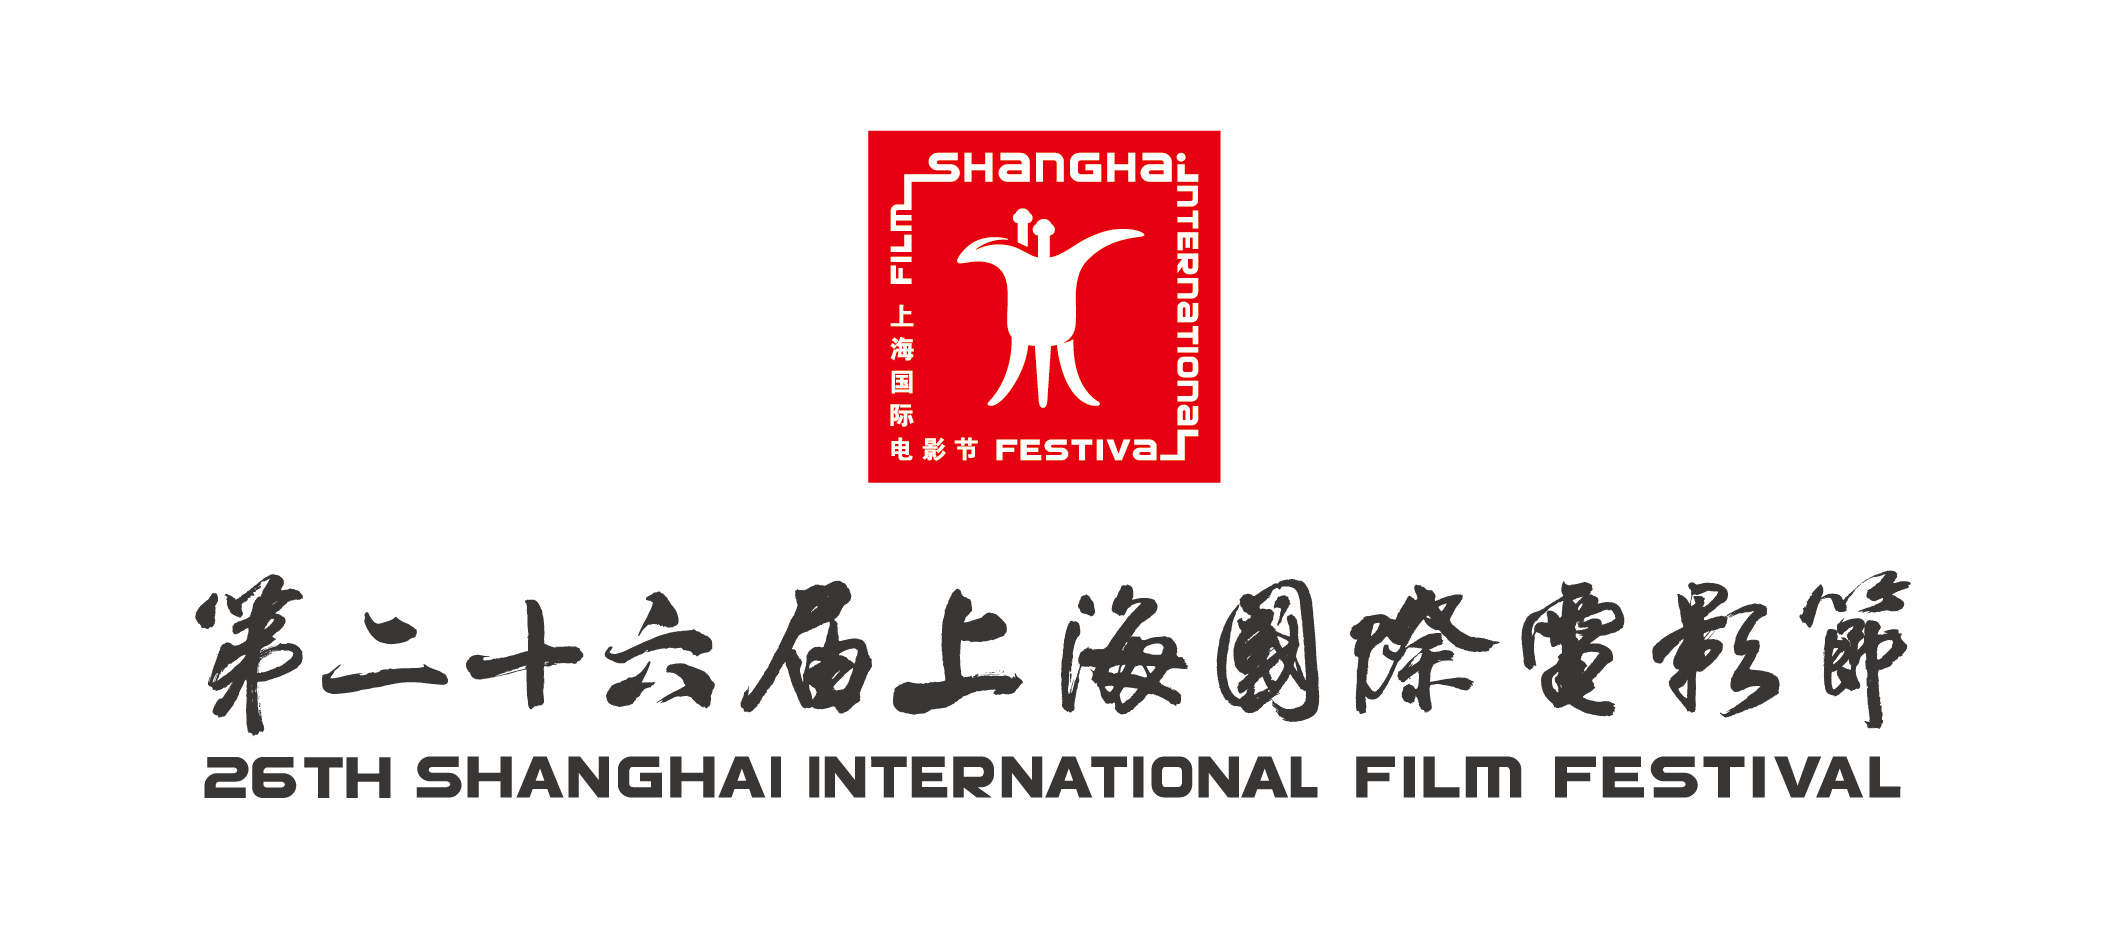 第26届上海国际电影节将于6月14日至23日举办  第1张